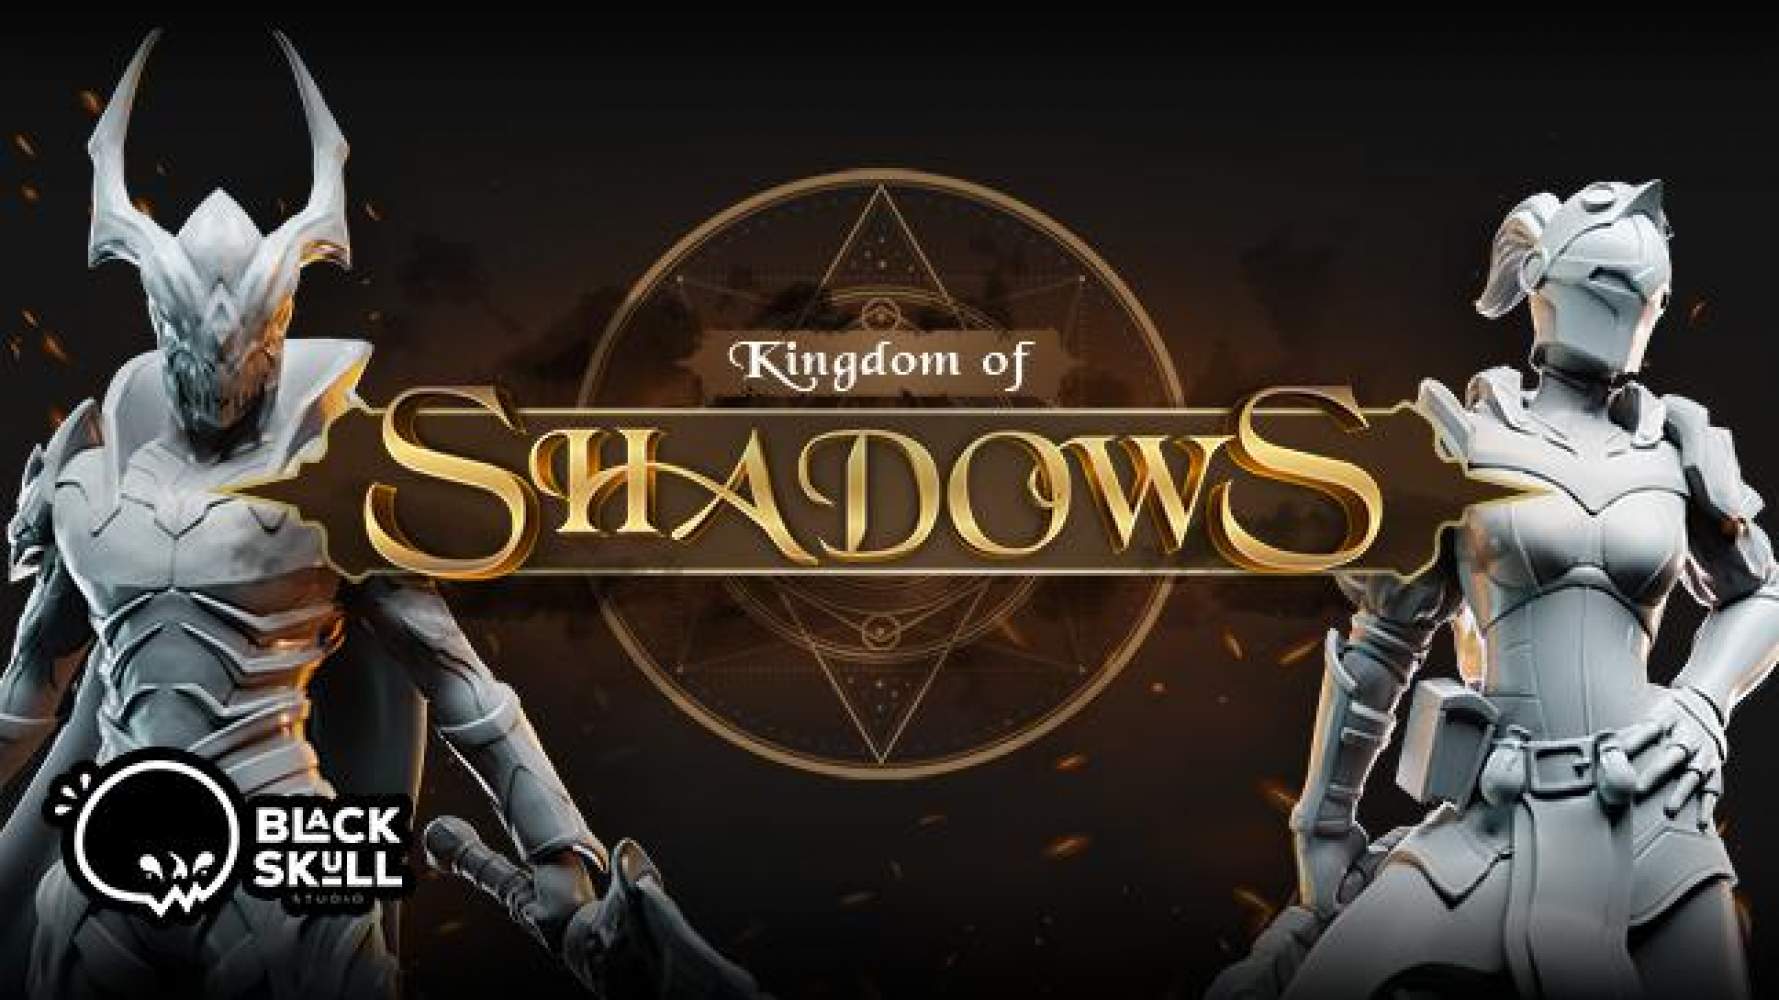 Kingdom of shadows